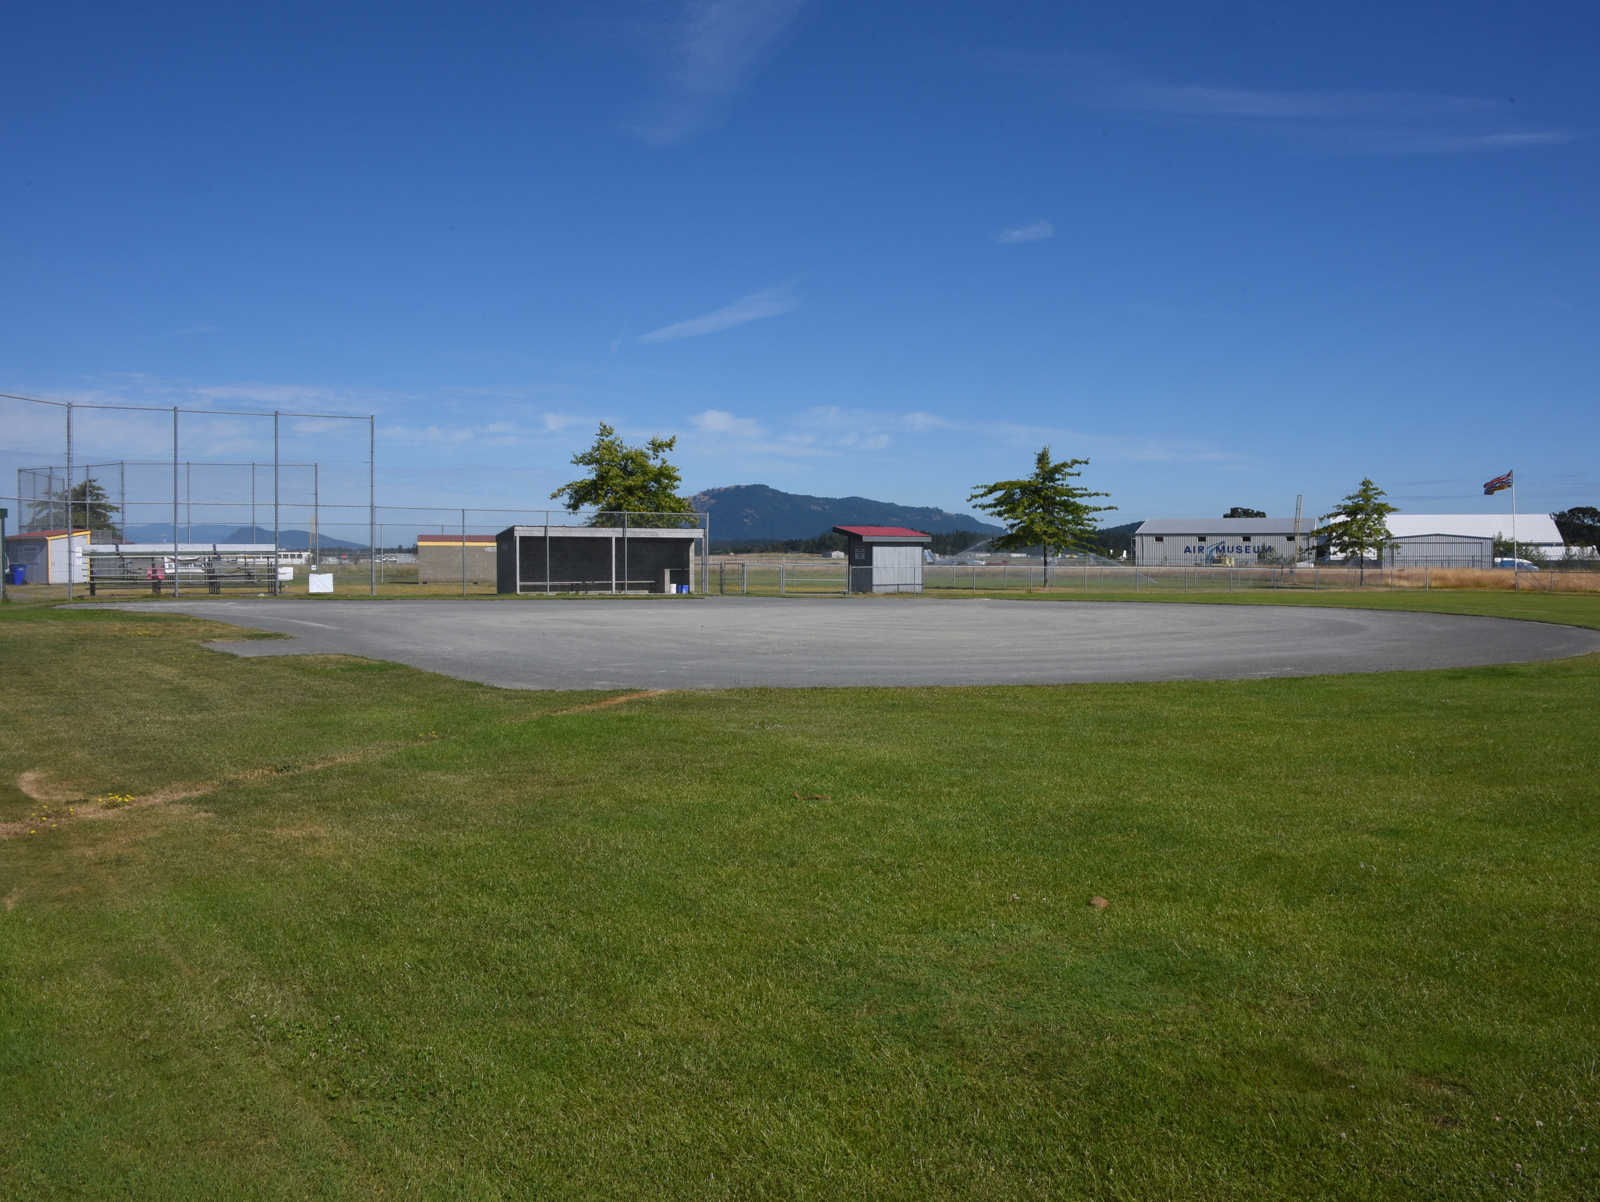  Rotary Park Baseball Field 